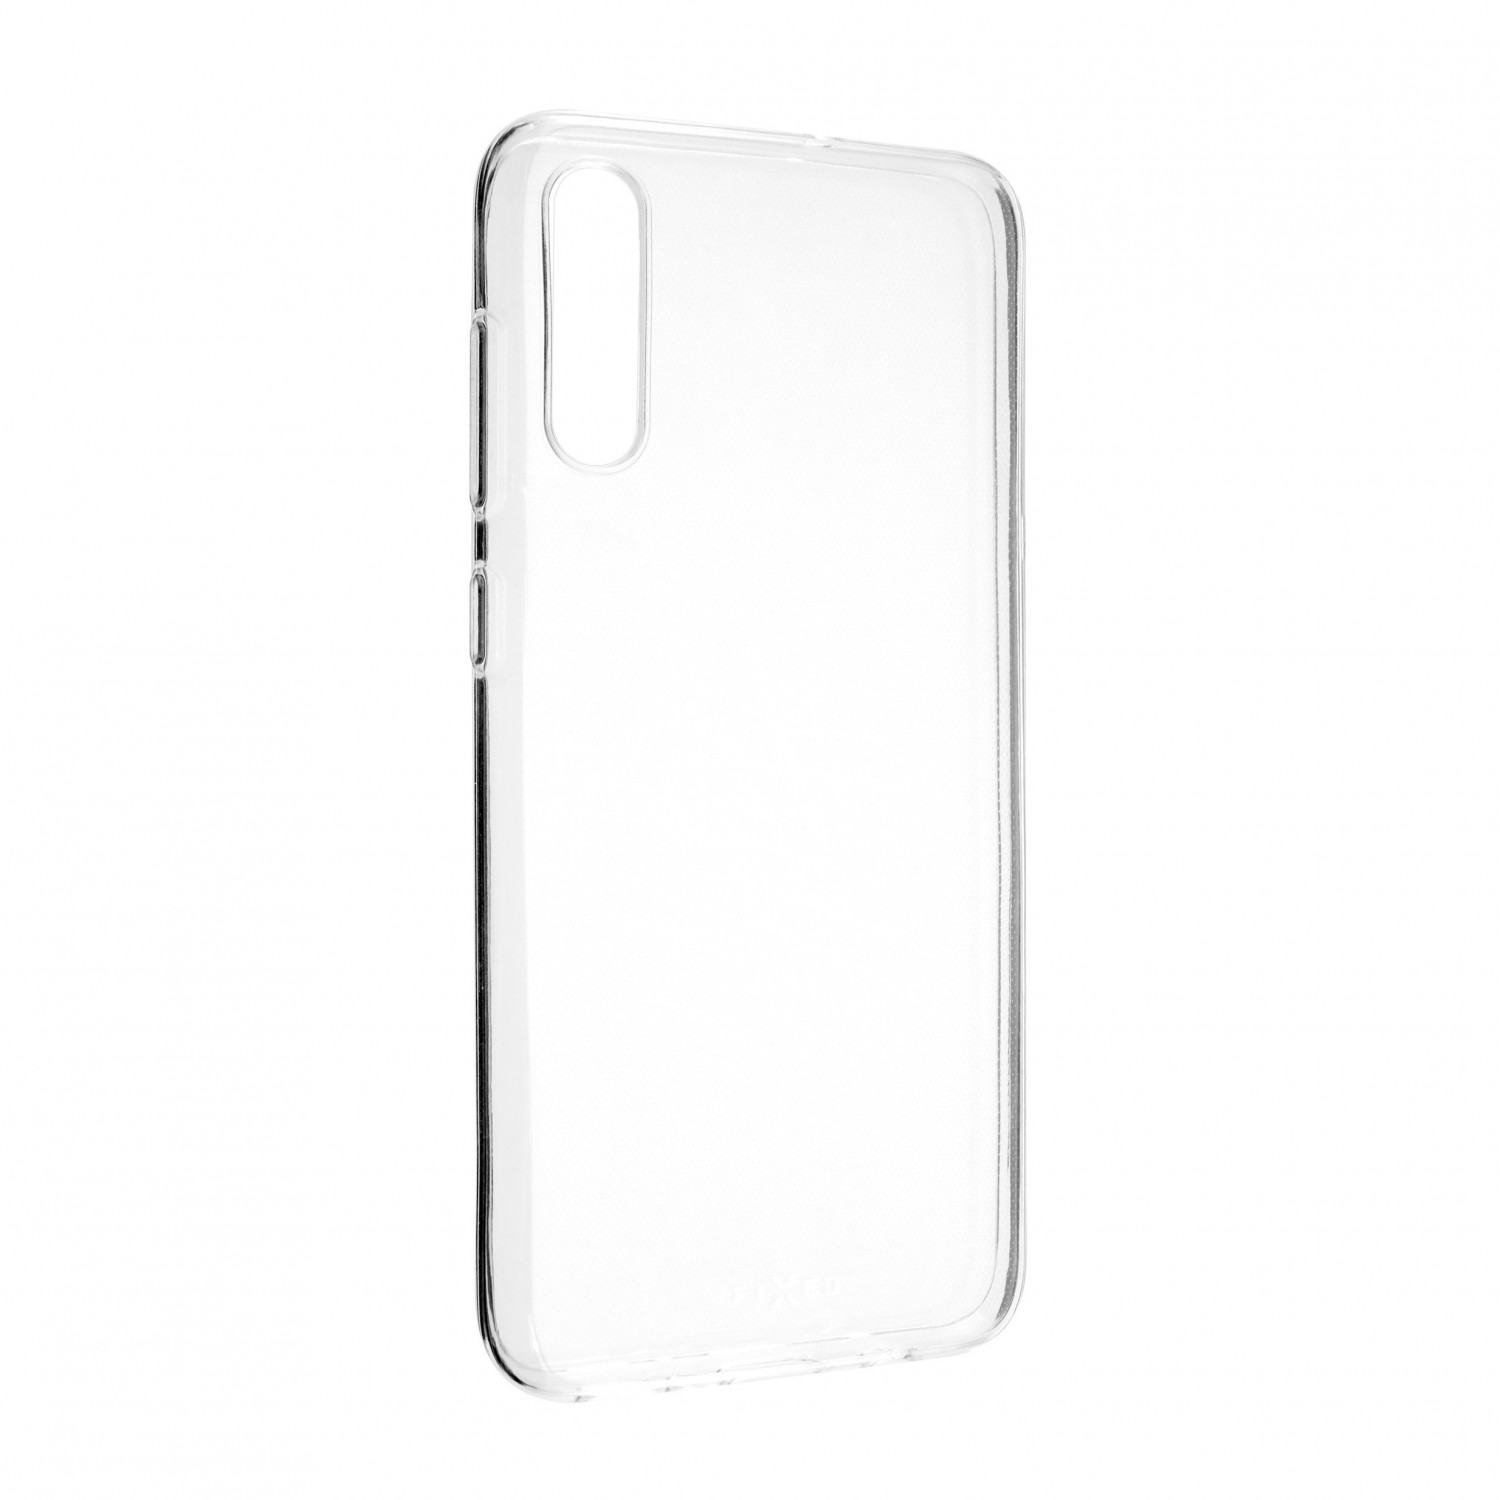 Ultratenké silikonové pouzdro FIXED Skin pro Samsung Galaxy A70, transparentní